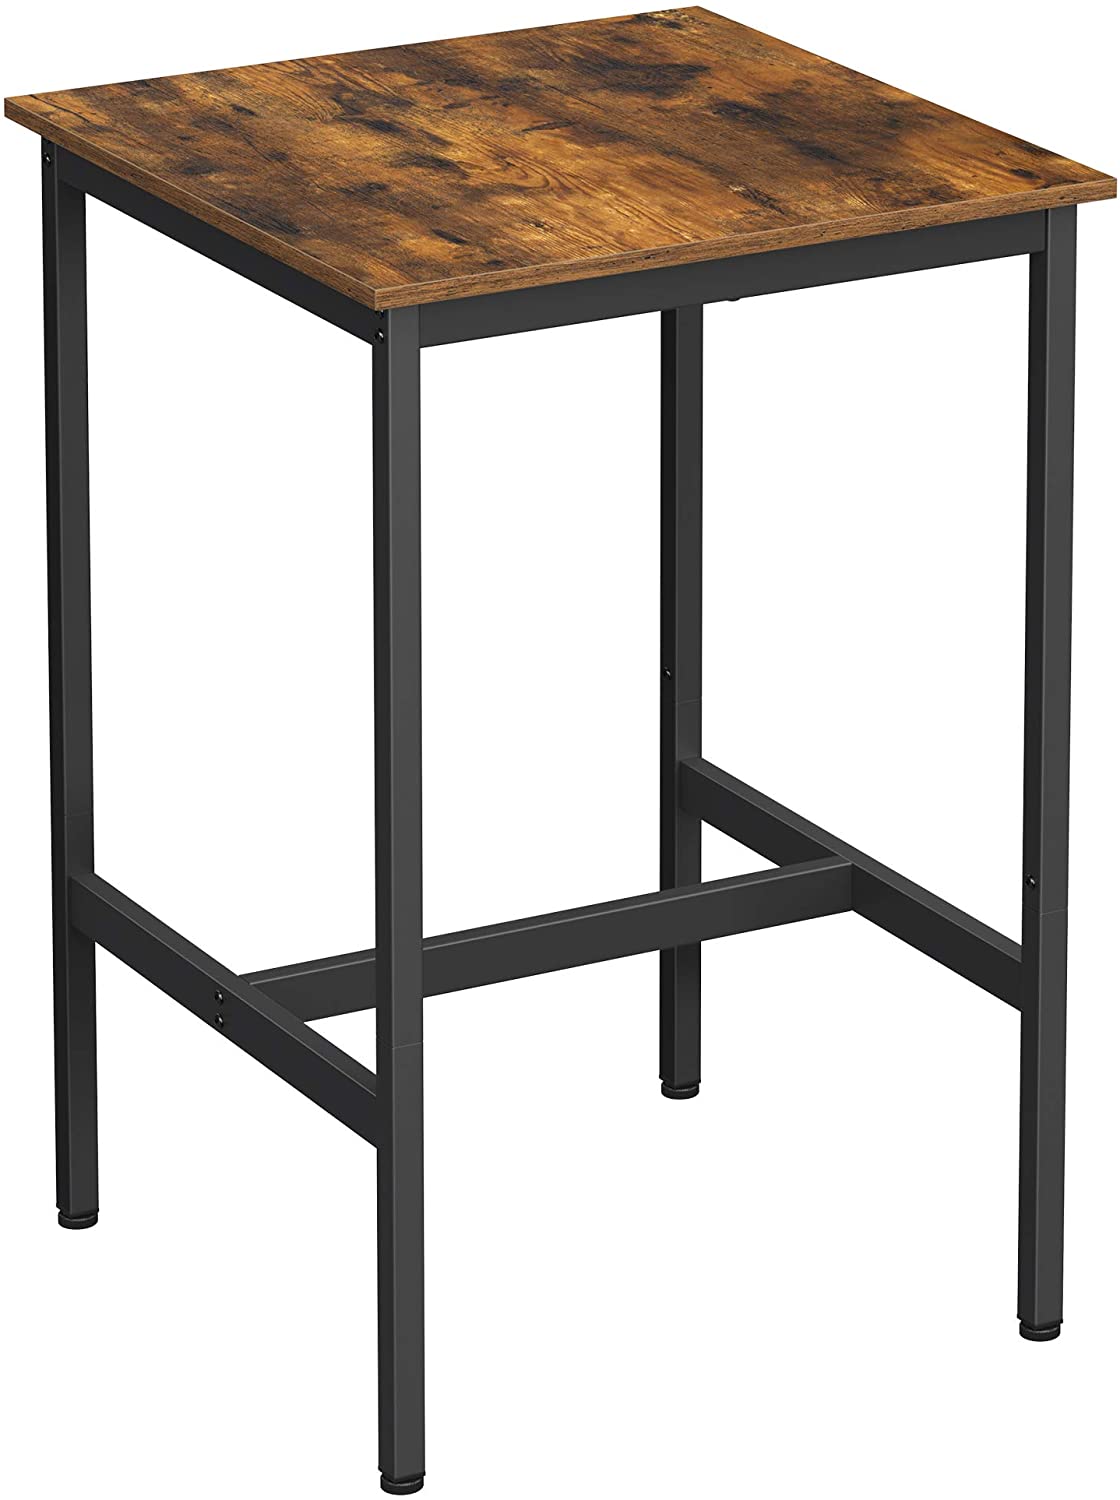 Szögletes magas bárasztal, rusztikus barna és fekete